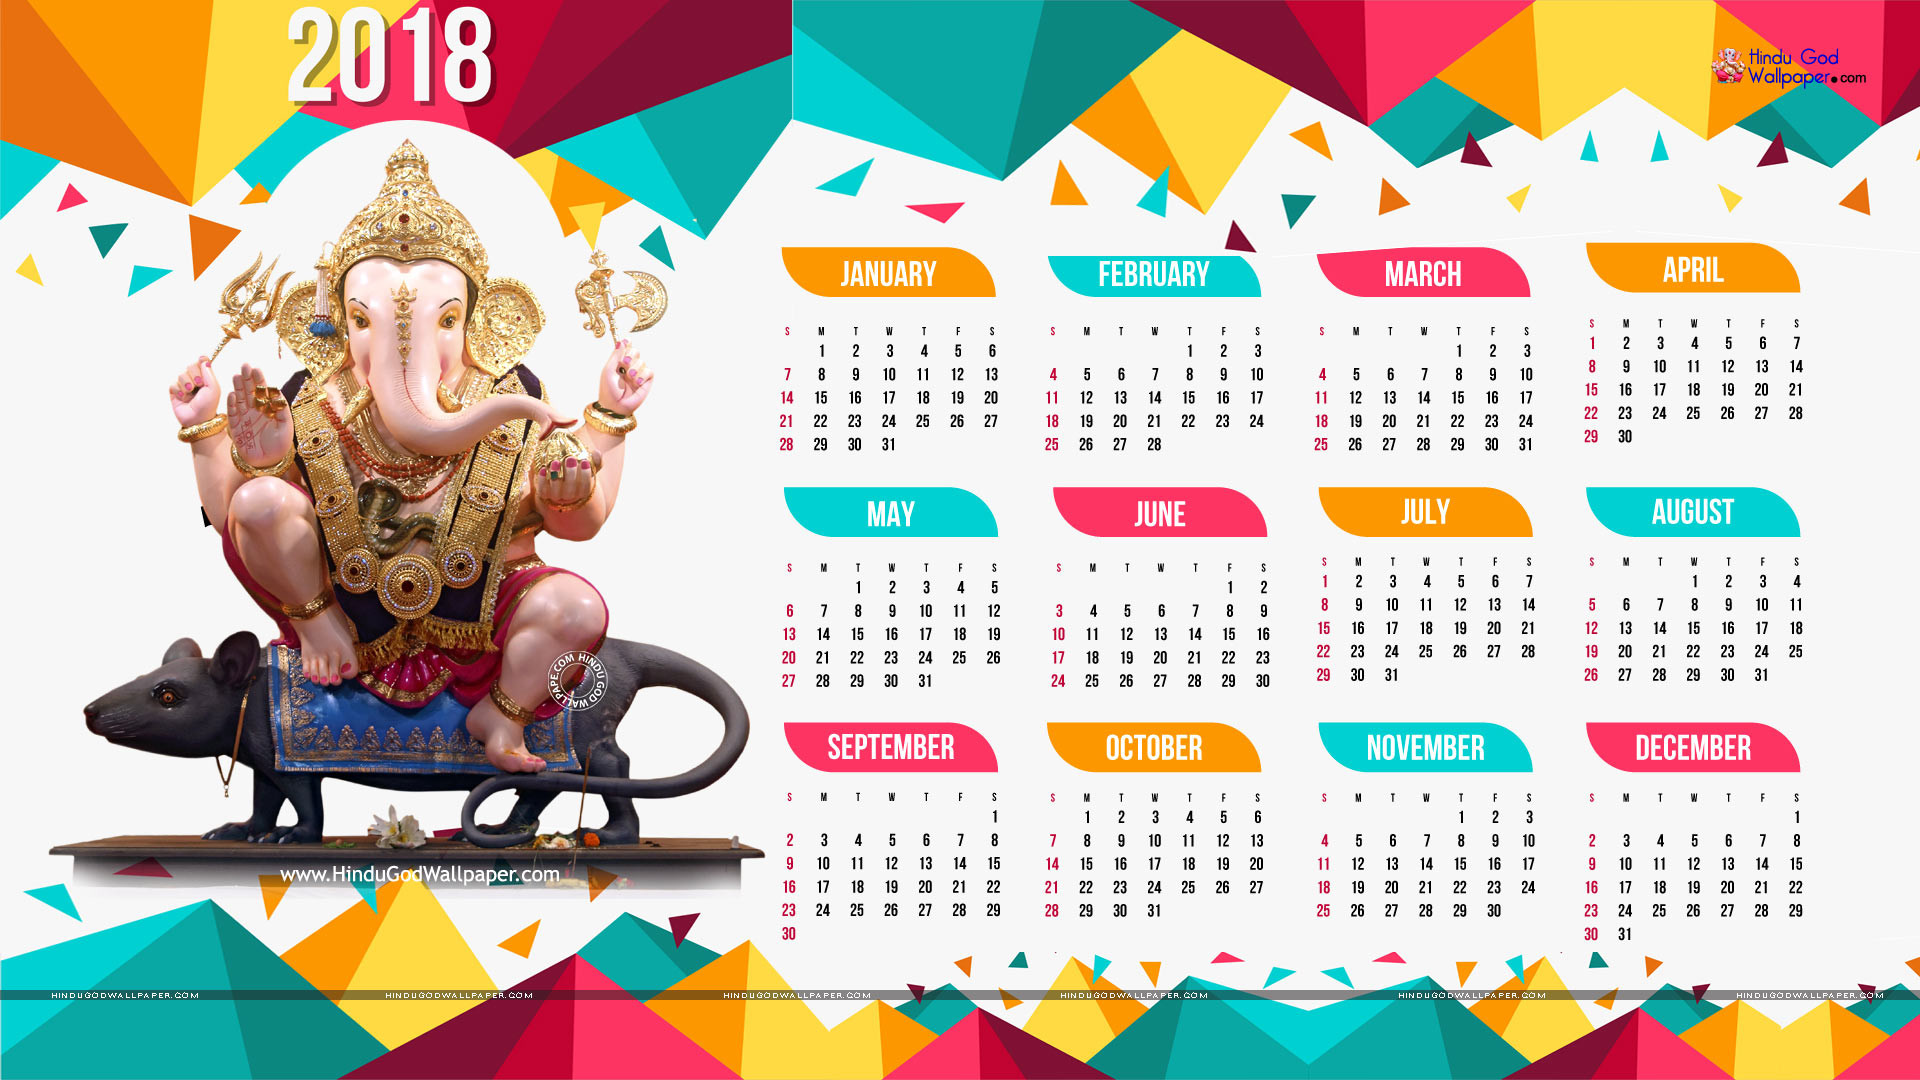 Calendar 2018 Hd Images - 2018 Calendar Full Hd , HD Wallpaper & Backgrounds